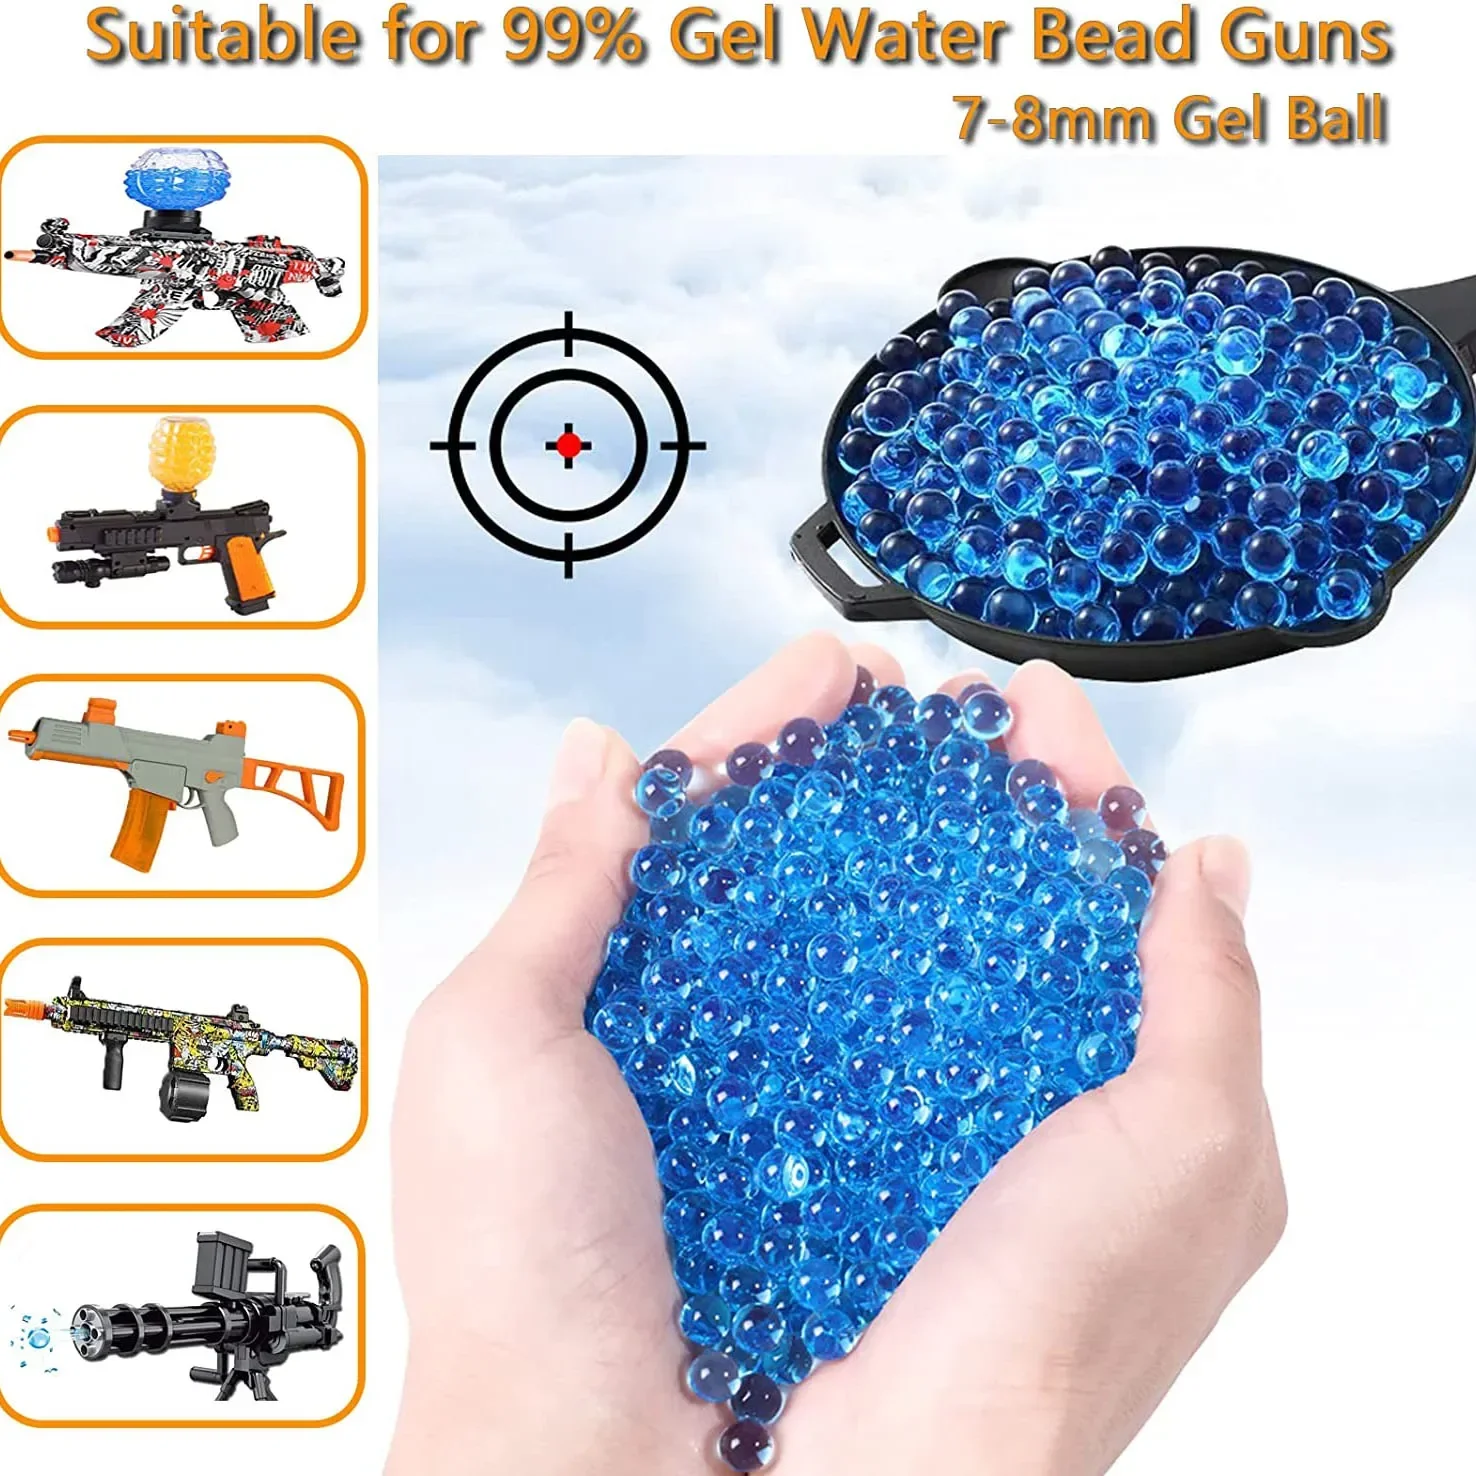 

(20000 Pcs) Splatter Ball Refill Ammo, Water Balls Beads with 7-8 Mm Non-Toxic for Splatter Ball Gun